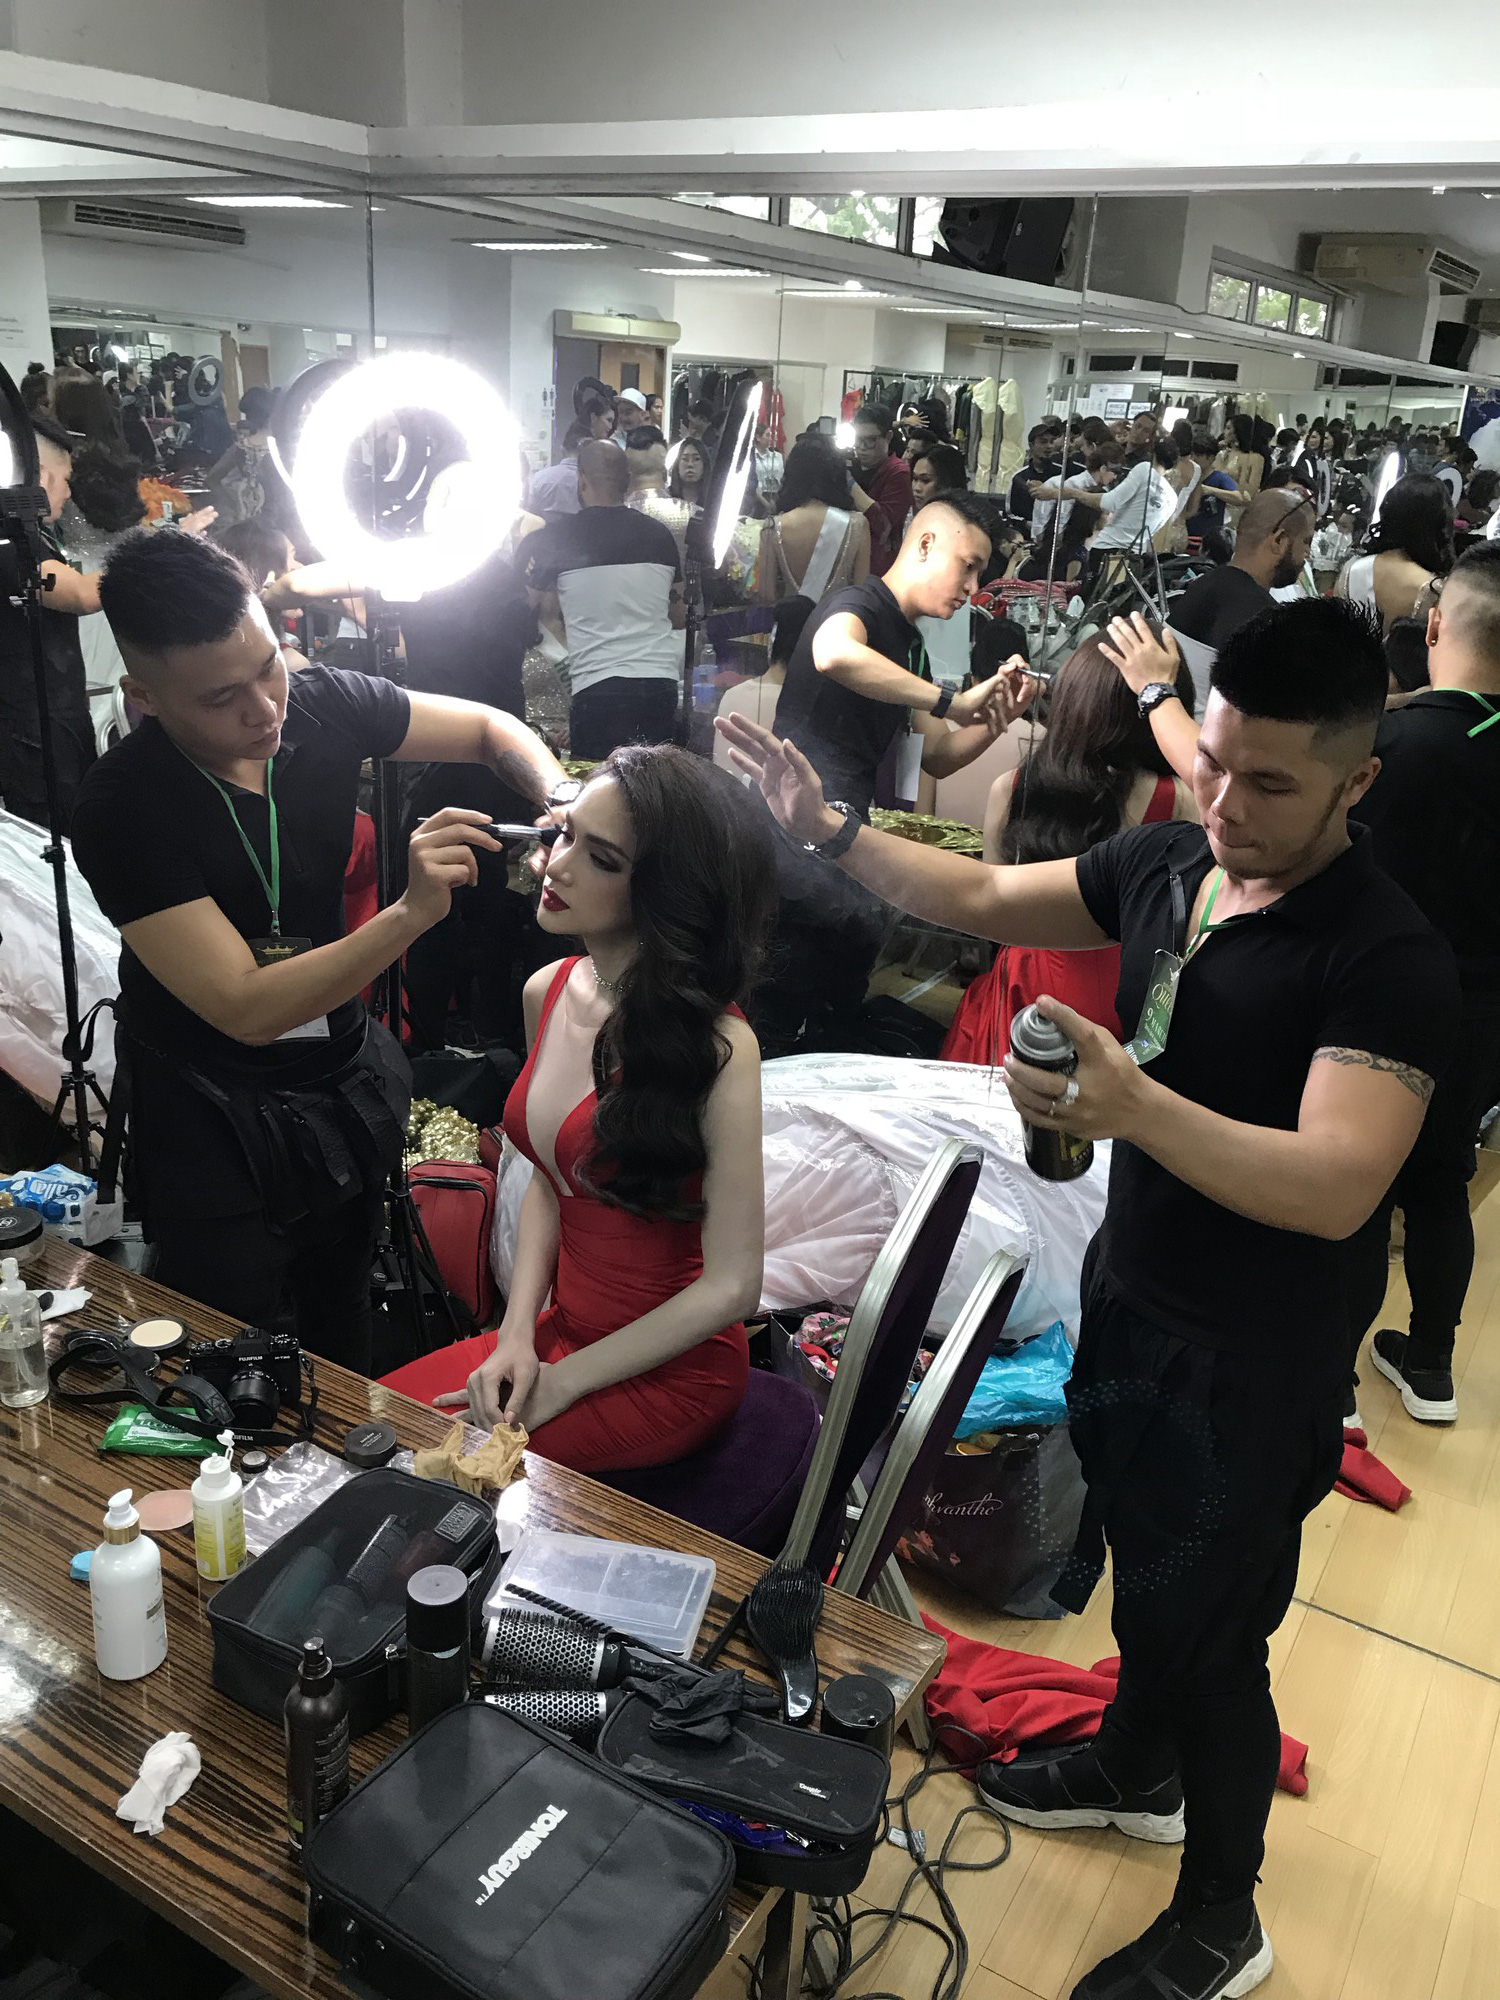 Đột nhập hậu trường chuẩn bị gấp rút của Hương Giang trước giờ diễn ra chung kết Hoa hậu Chuyển giới Quốc tế 2018 - Ảnh 3.